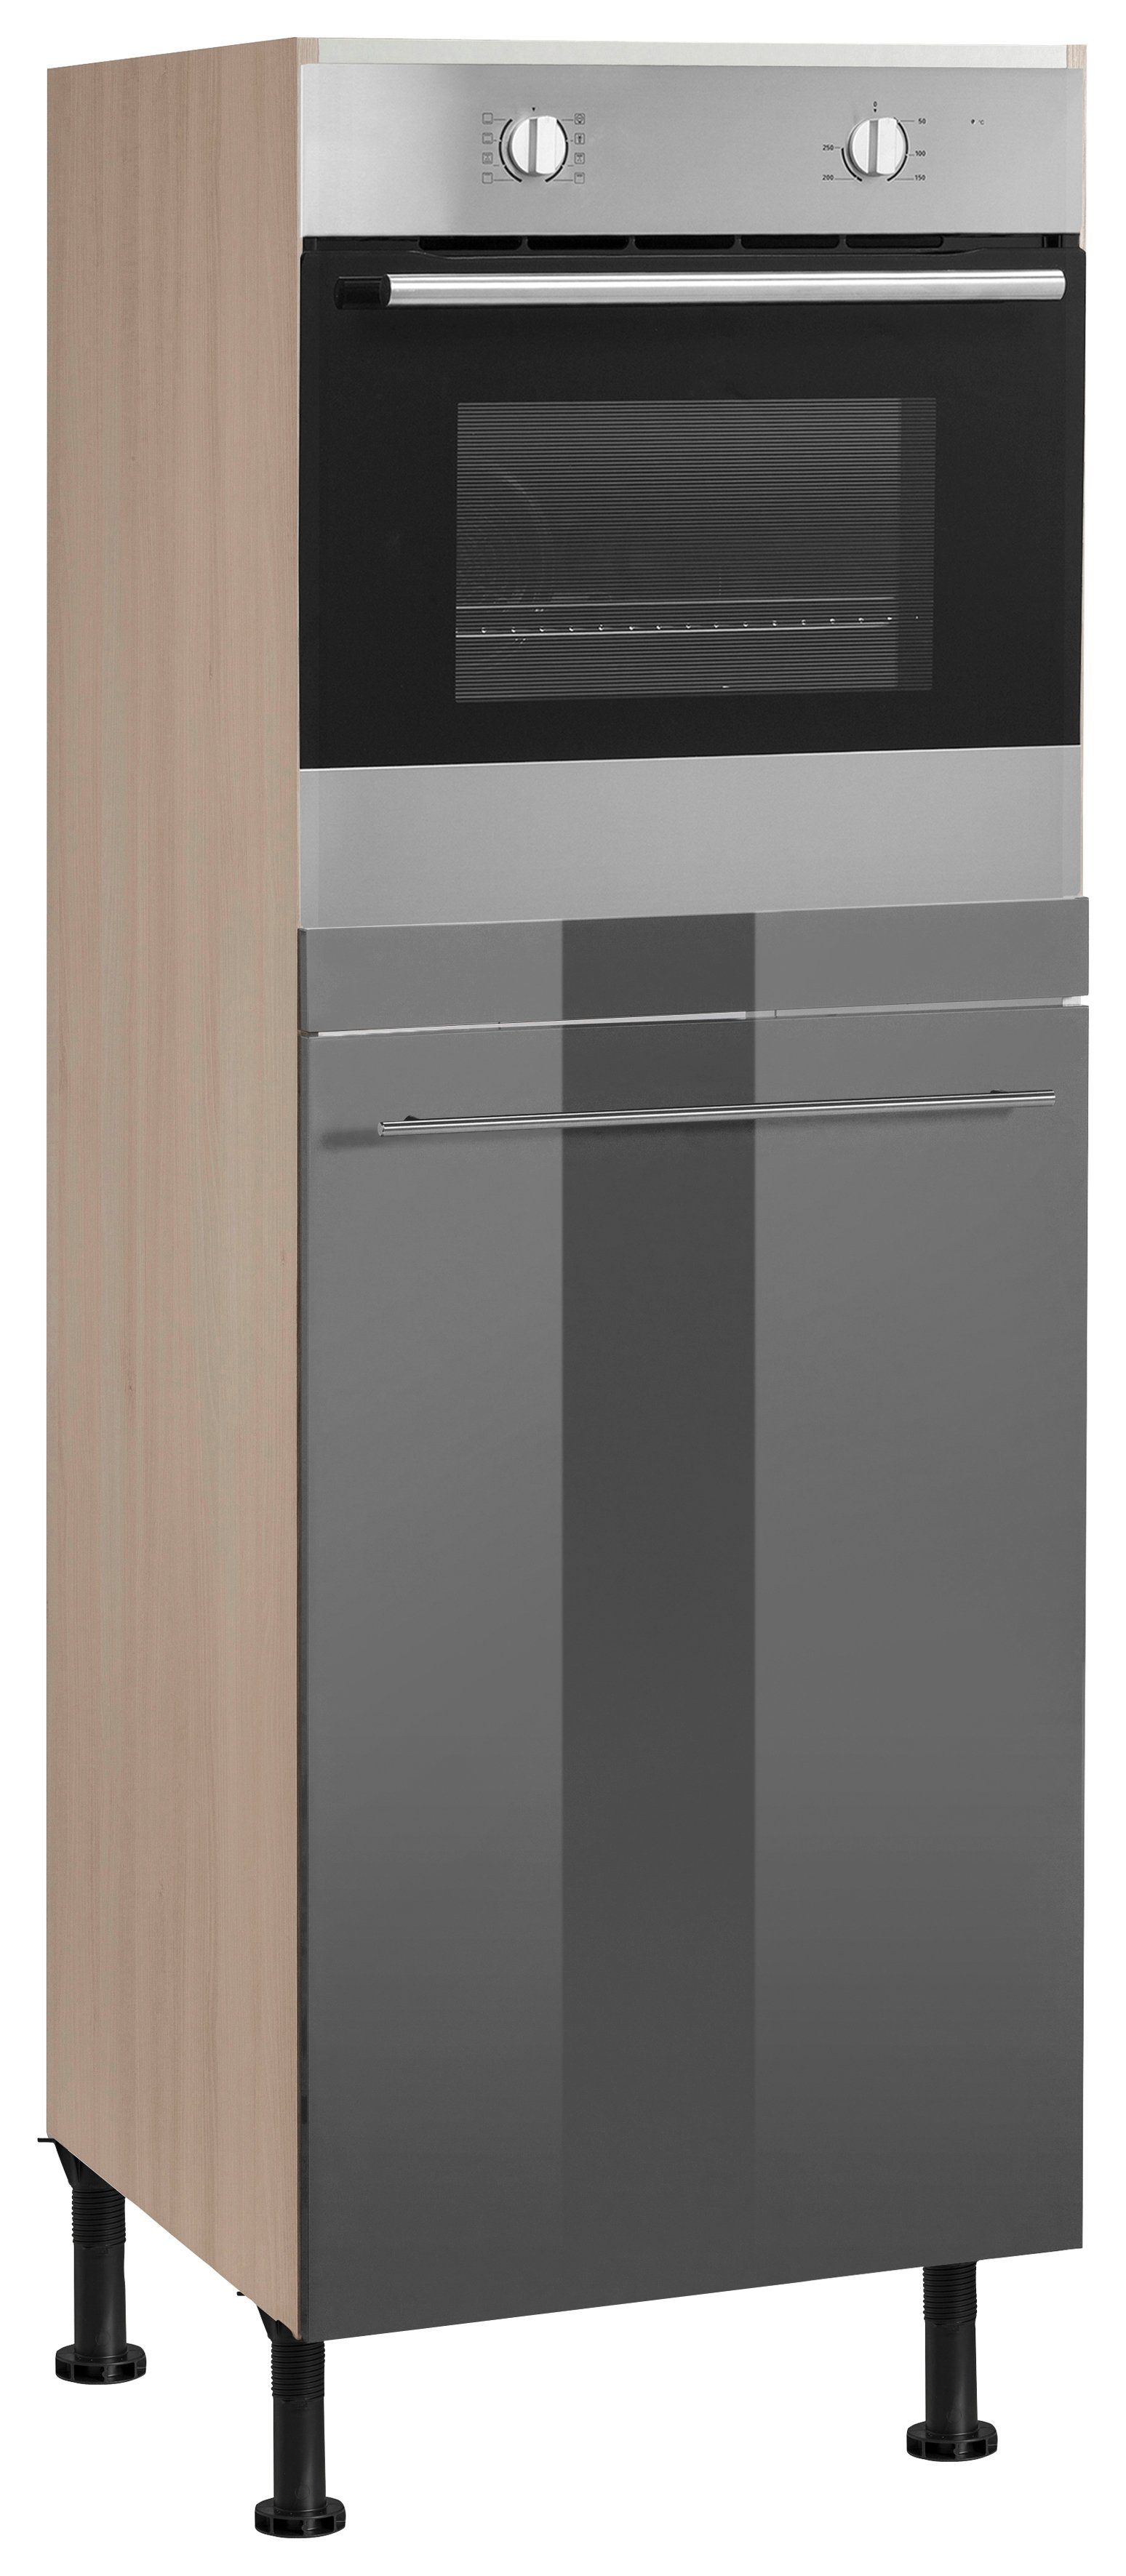 OPTIFIT Oven/koelkastombouw 60 cm breed, 176 cm hoog, met in hoogte verstelbare stelpoten, met metalen greep